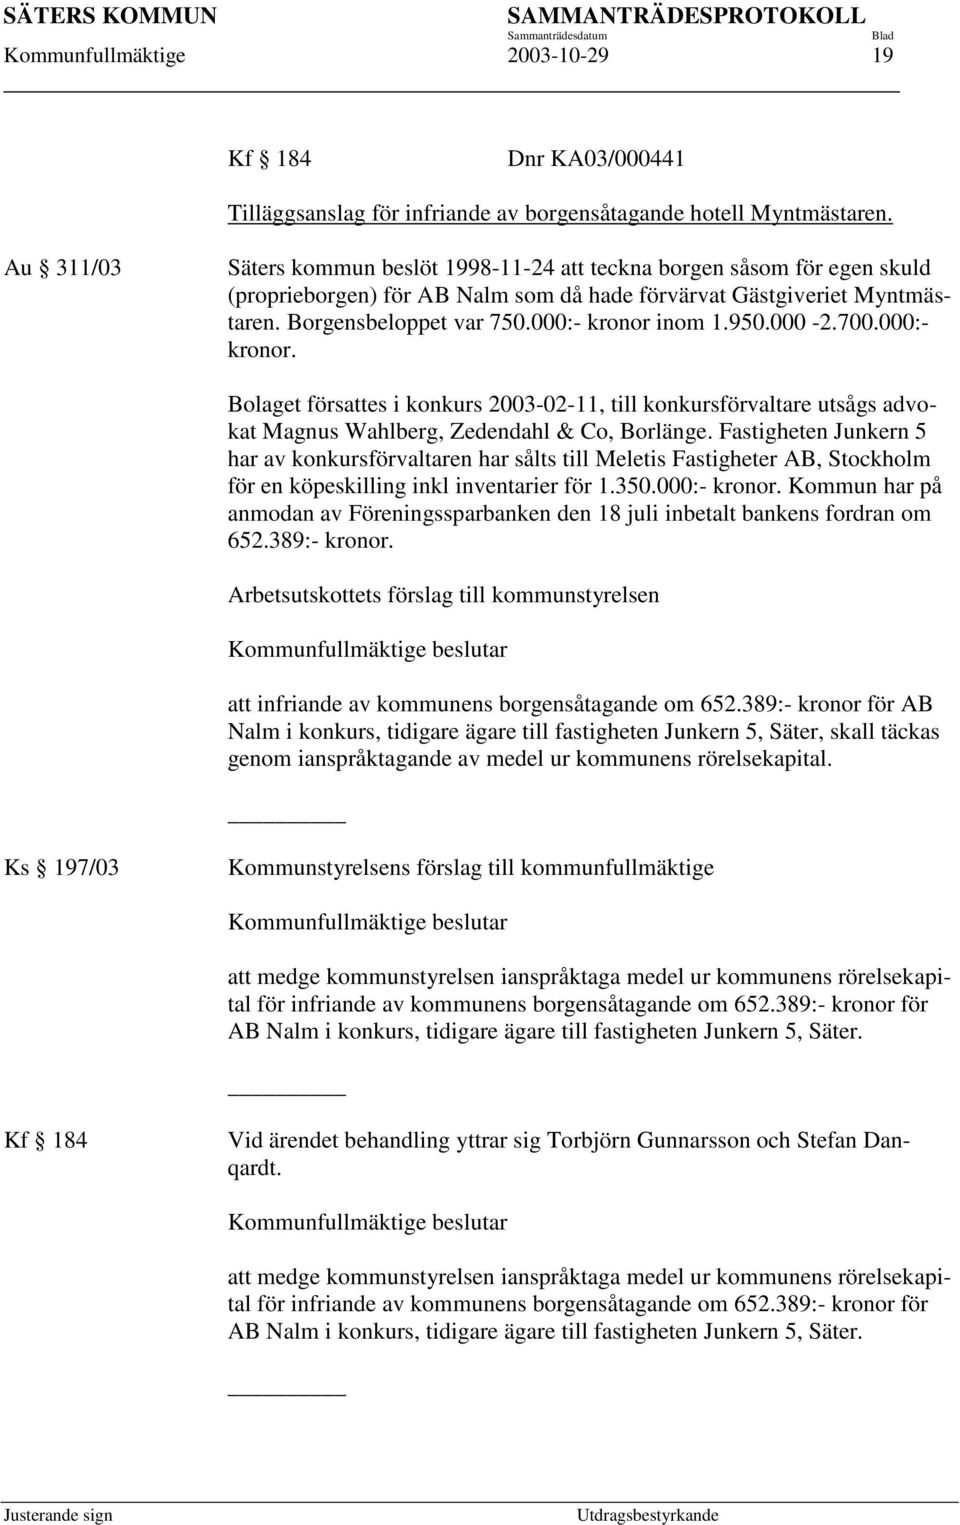 000:- kronor inom 1.950.000-2.700.000:- kronor. Bolaget försattes i konkurs 2003-02-11, till konkursförvaltare utsågs advokat Magnus Wahlberg, Zedendahl & Co, Borlänge.